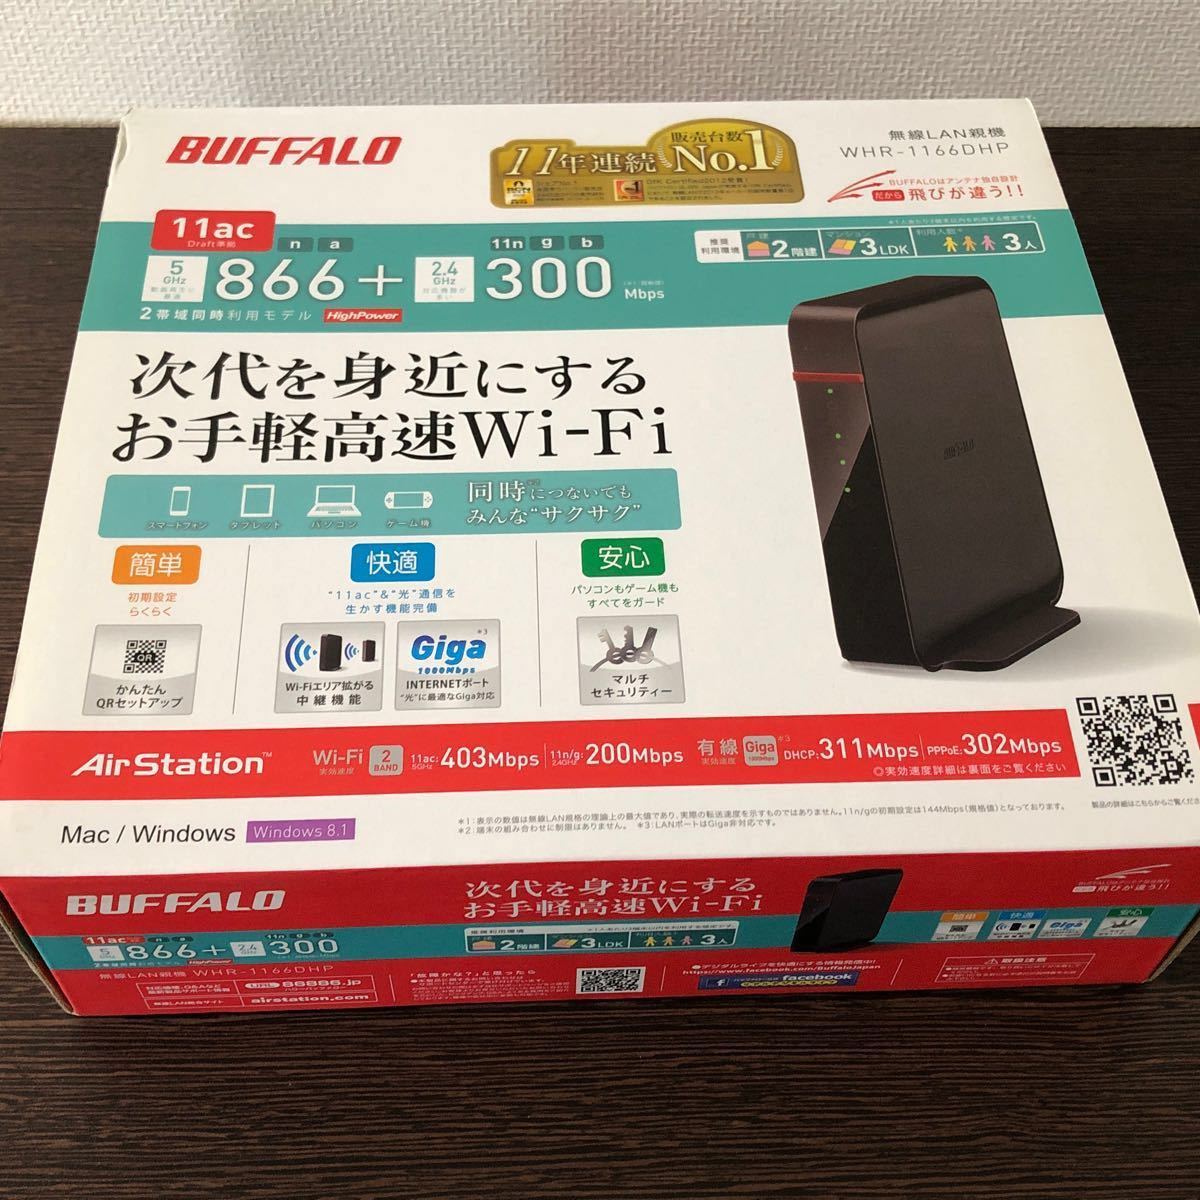 ★美品 BUFFALO 無線LAN ルーター WHR-1166DHP バッファロー Wi-Fi★